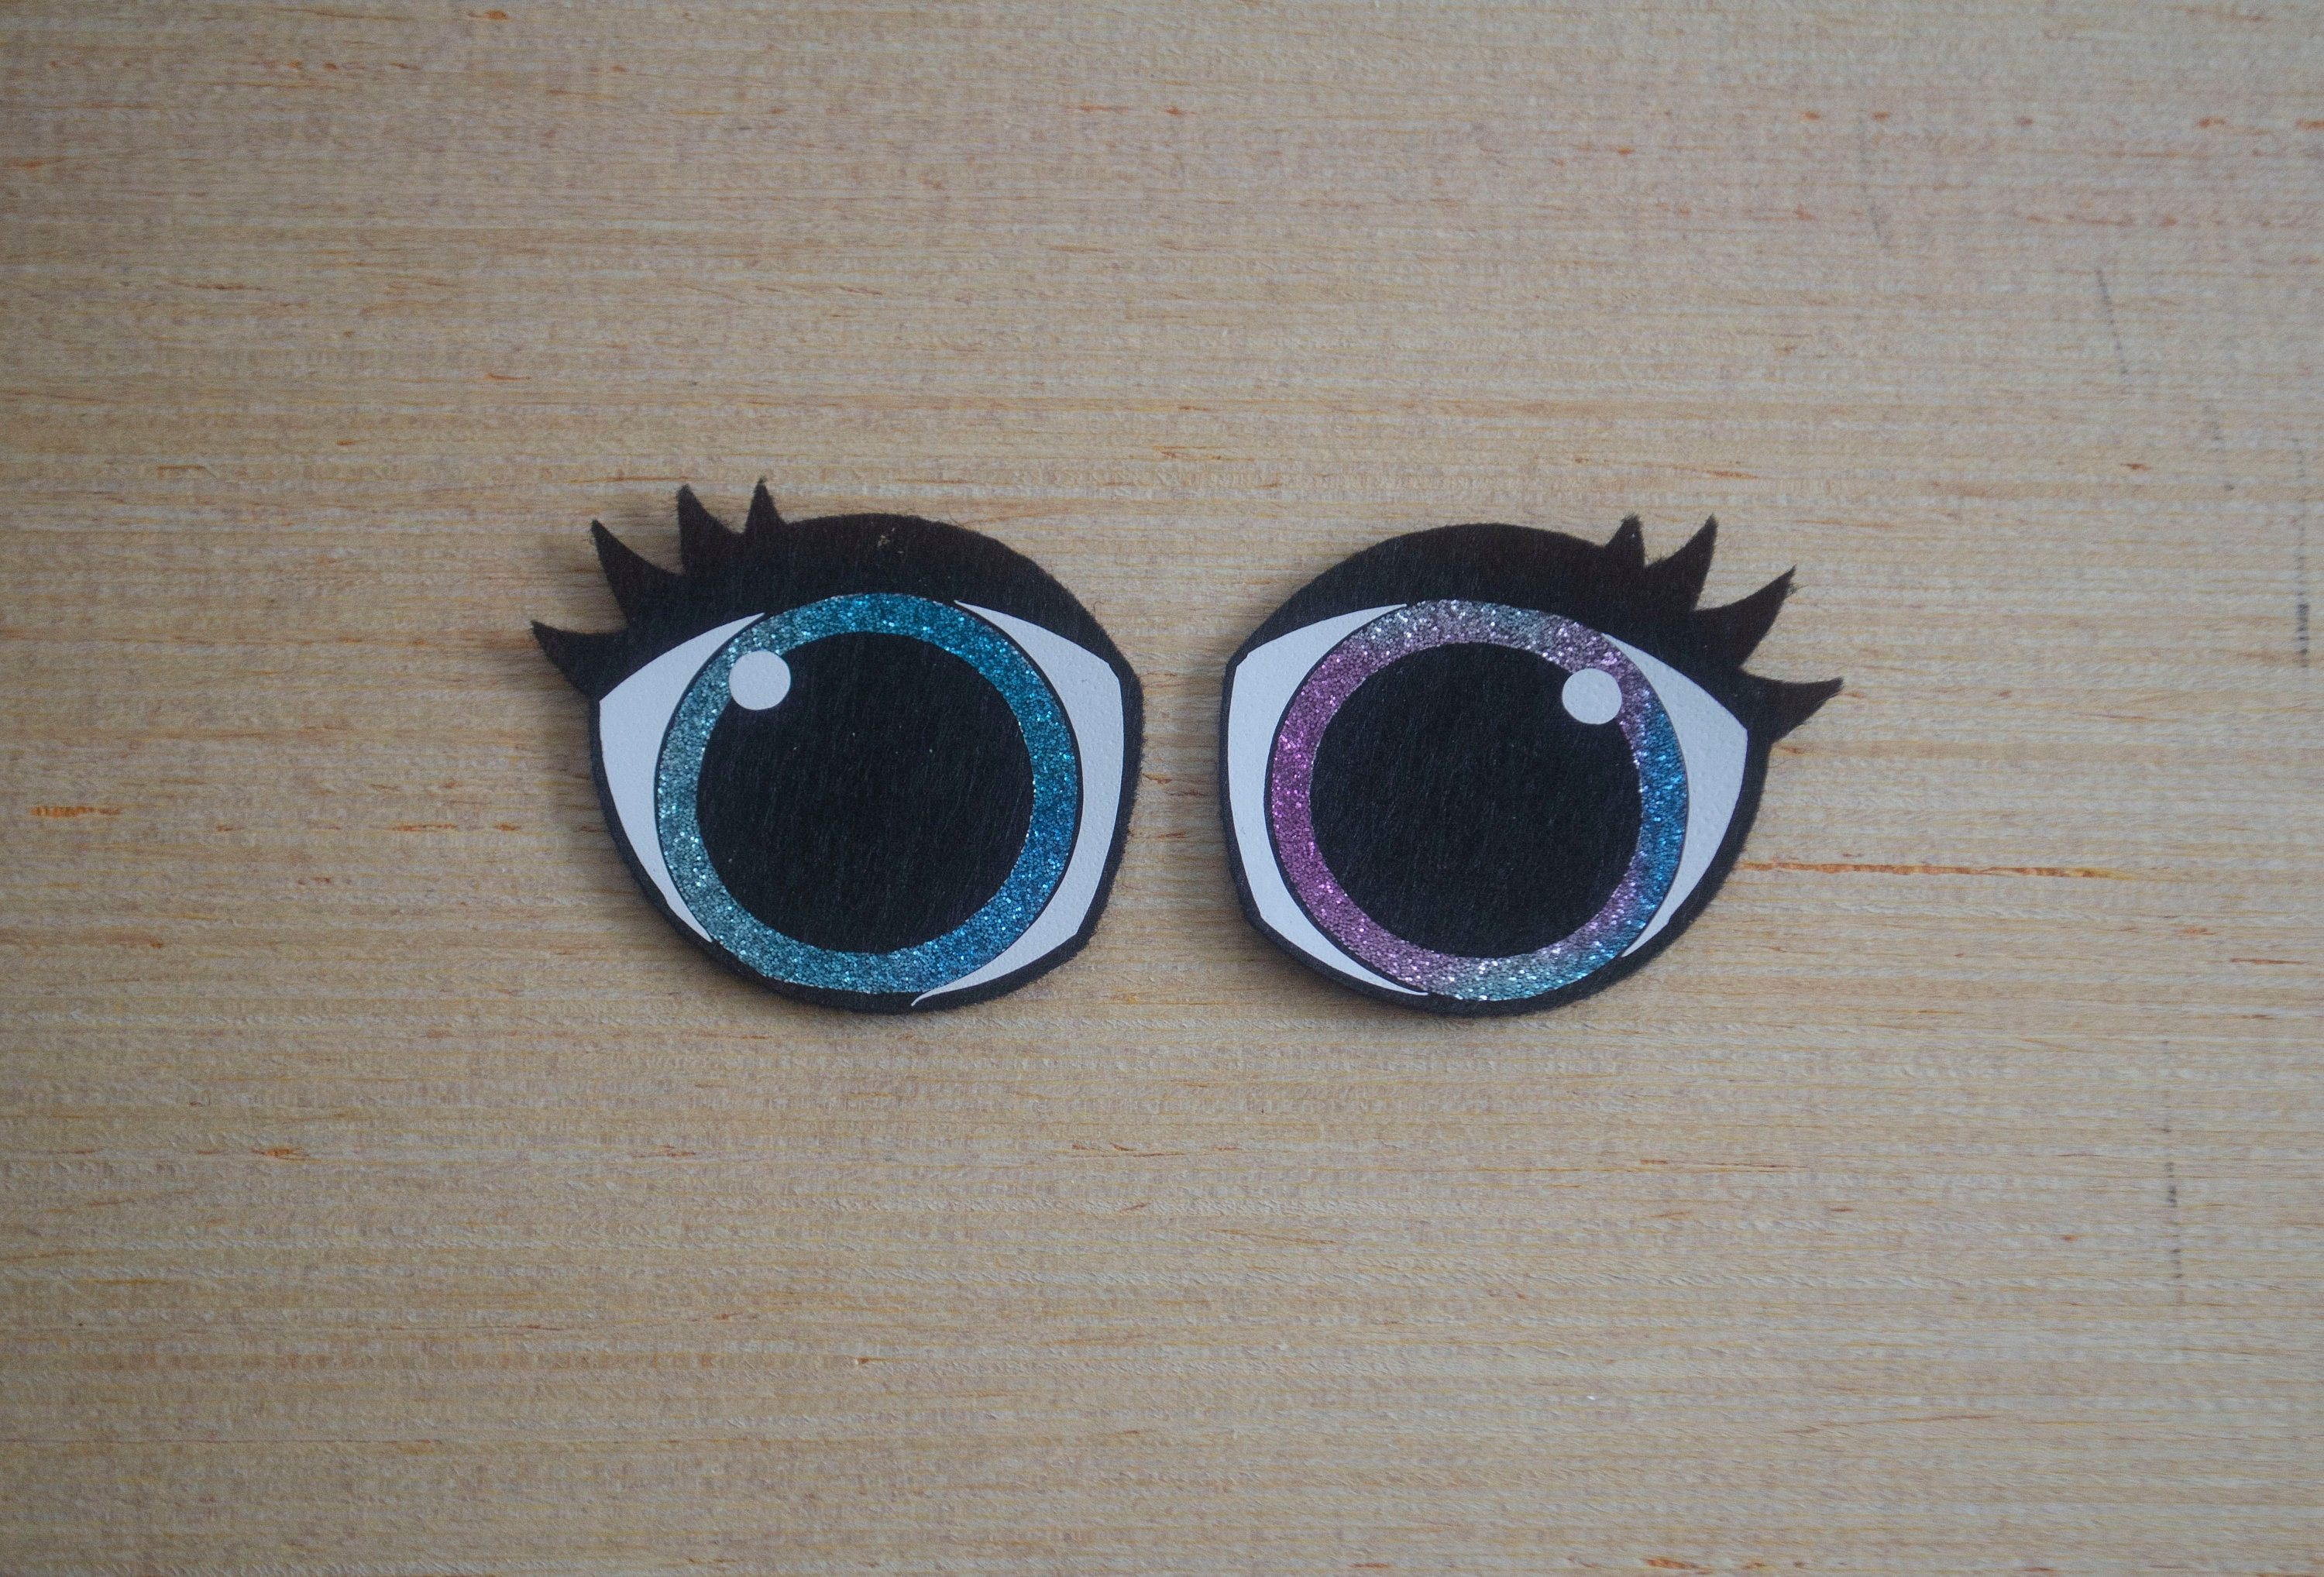 5 Sets Oval Felt Eyes, Felt Eyes for Amigurumi, 1.5 Inch Eyes, 2